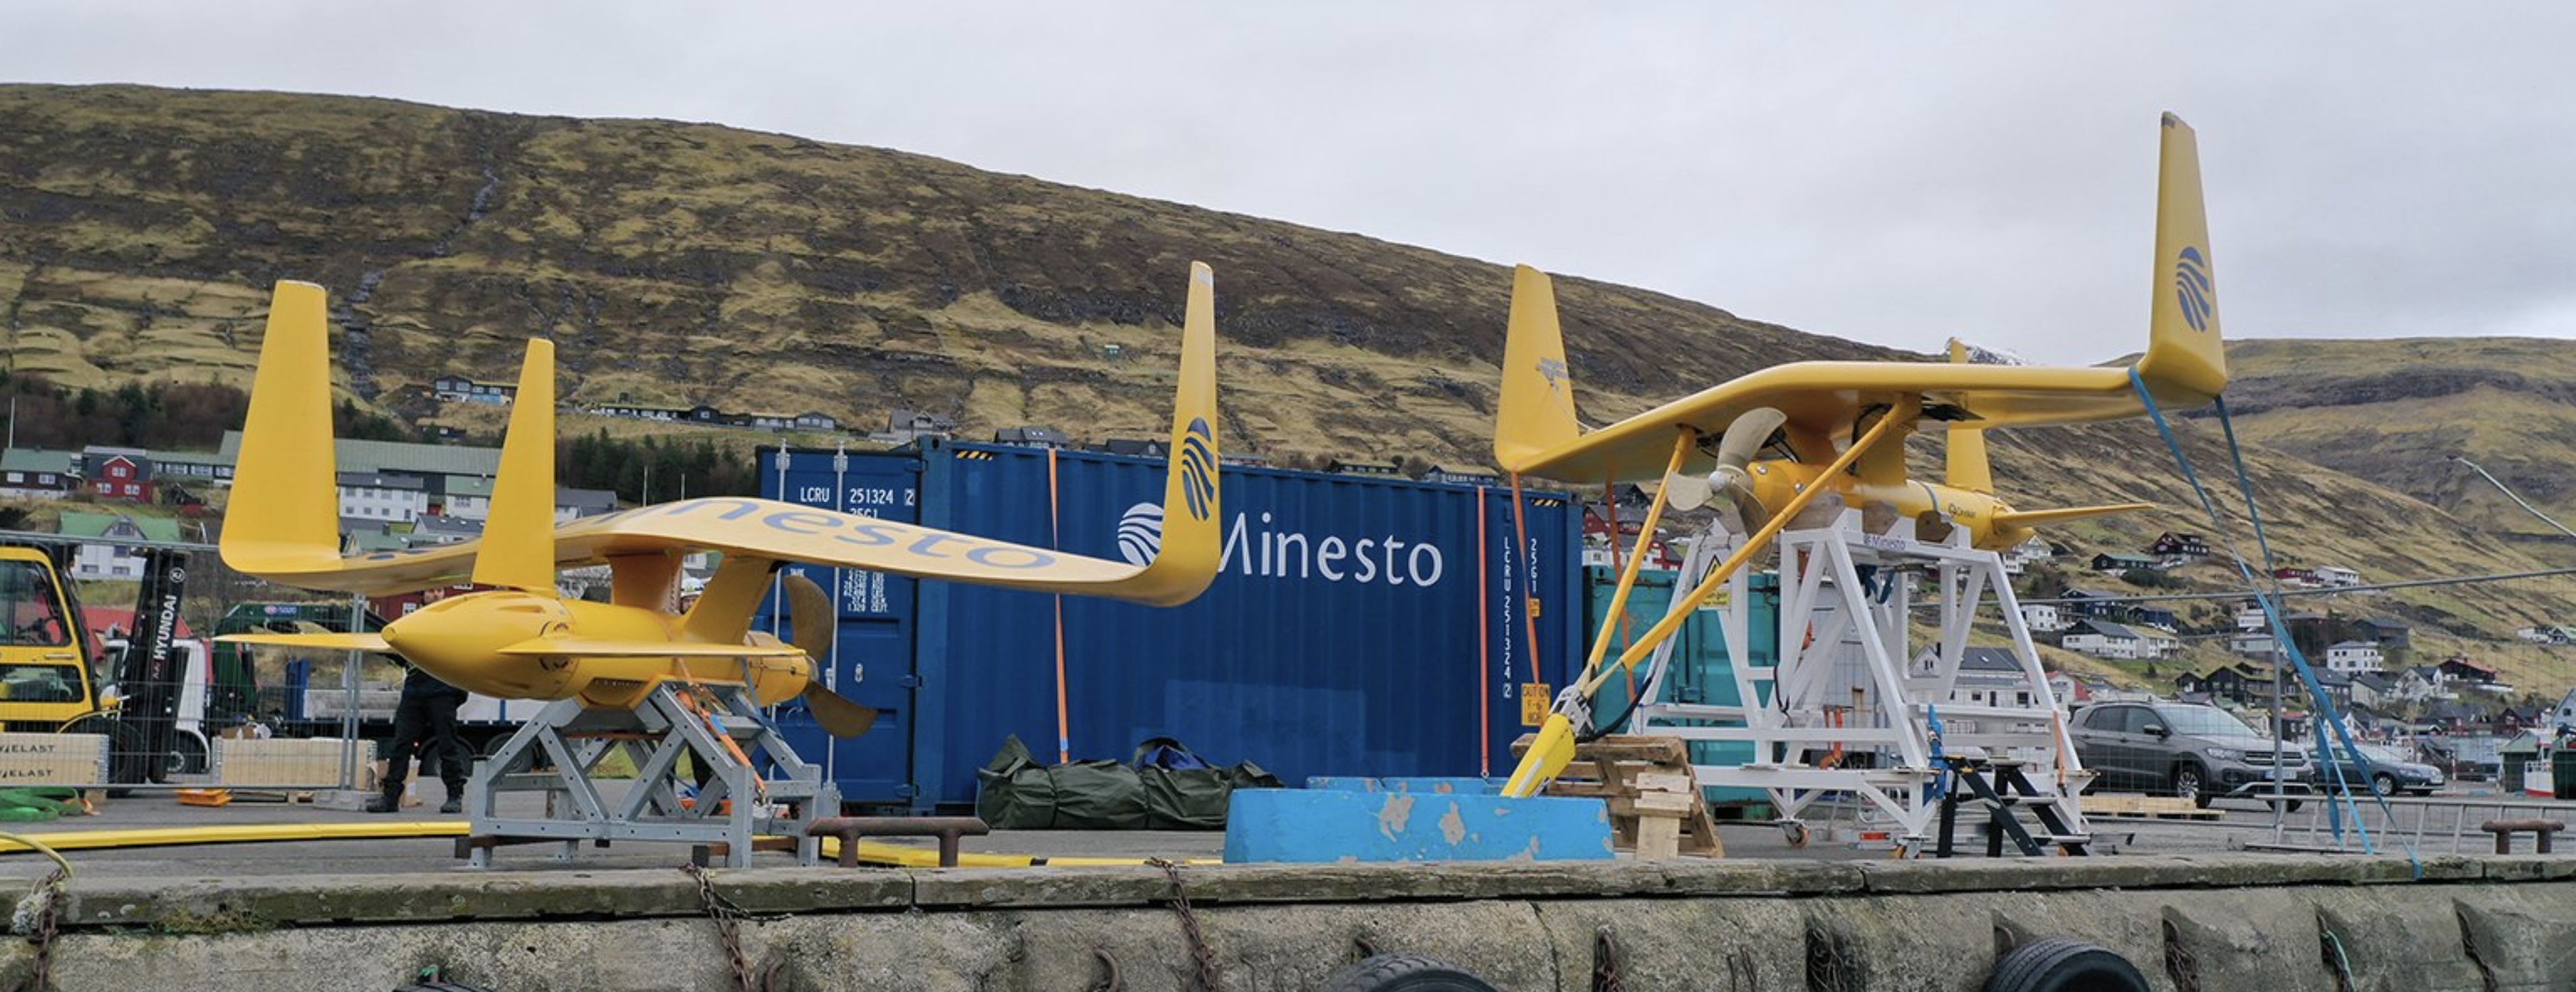 3 subsea kites awaiting installation